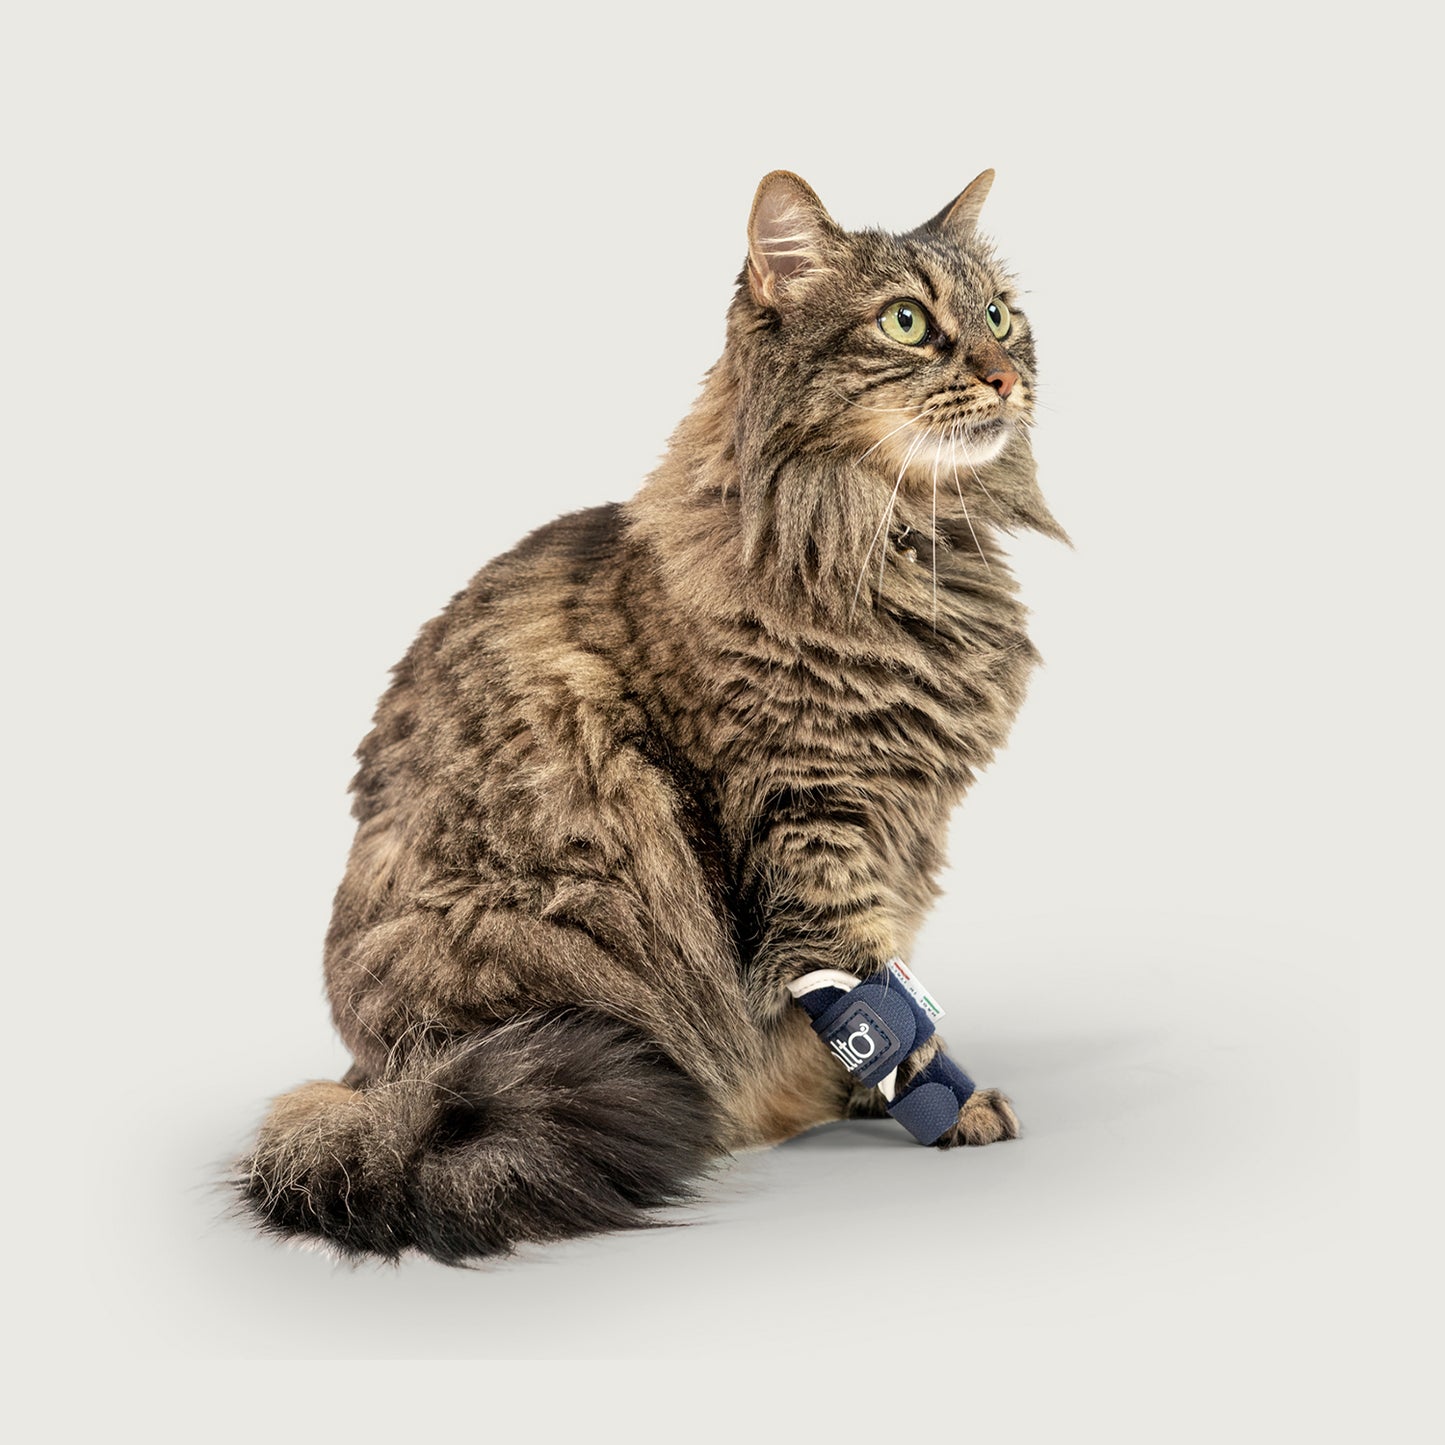 
                  
                    cat wearing balto splint brace looking off to side
                  
                